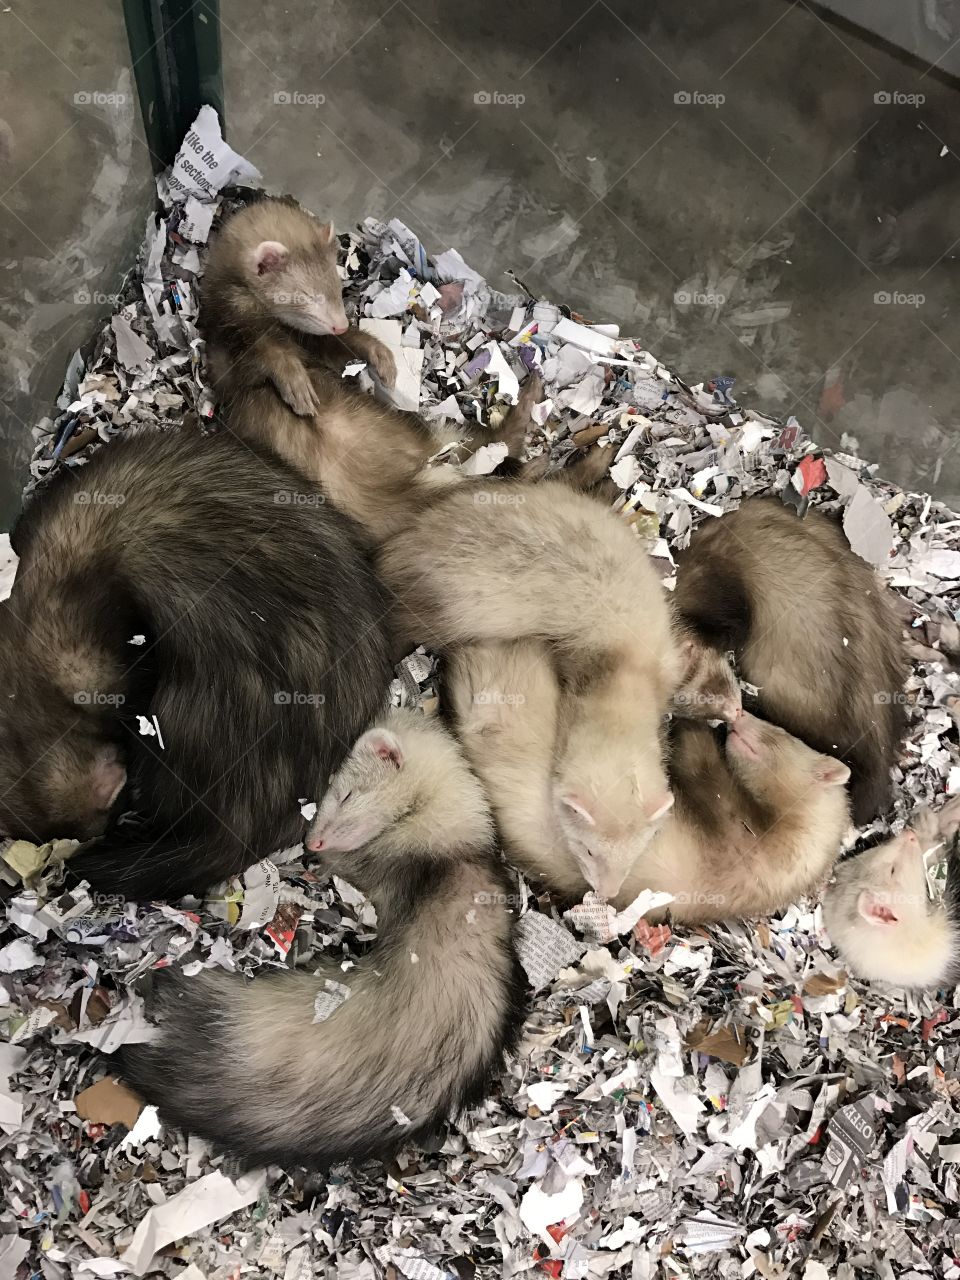 Cute sleeping ferrets in a pet store